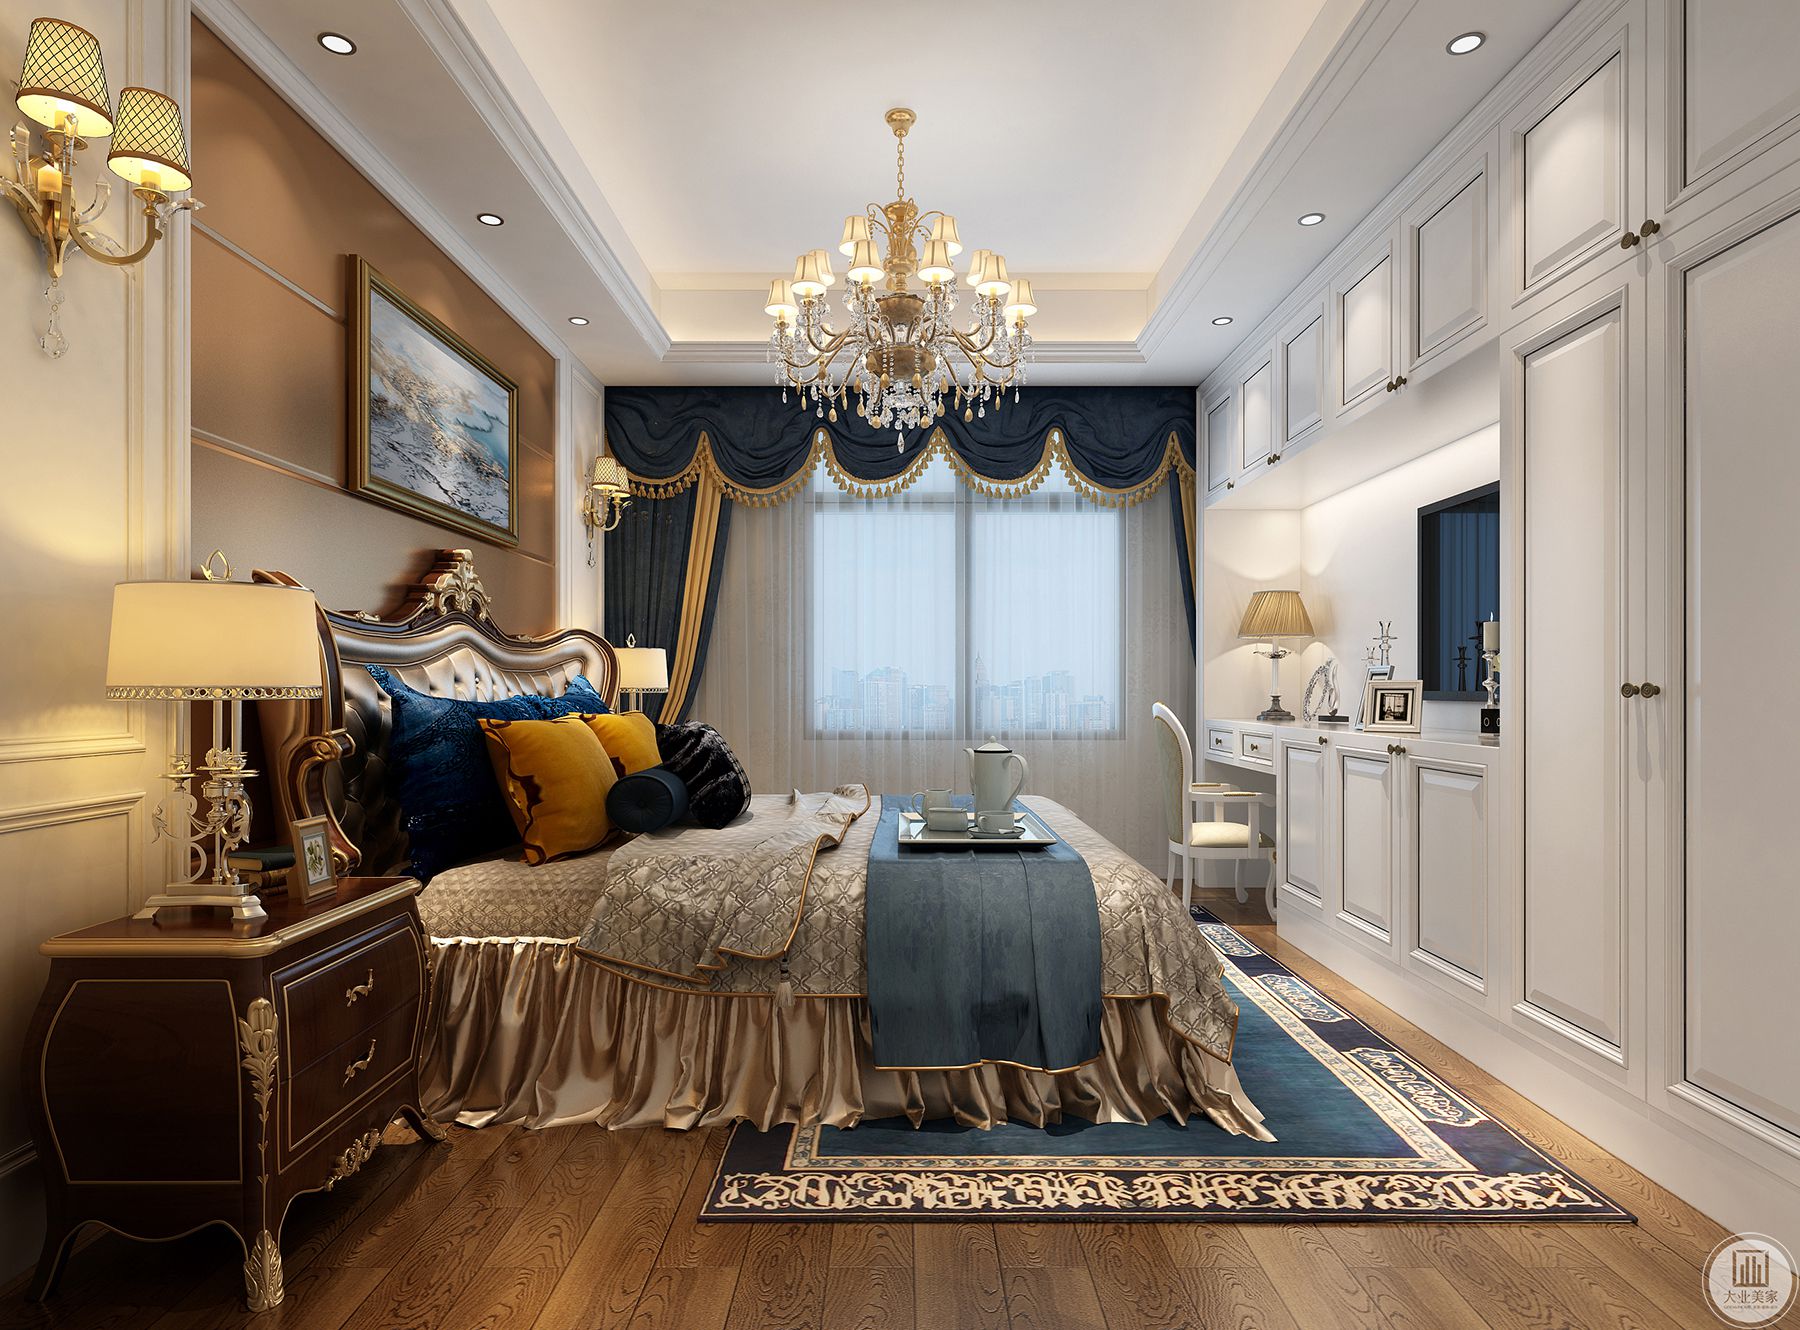 客厅用不同的材质增添了空间的质感，又兼具美观和收藏的功能。满足居者不同的收纳需要。变得更加精致。